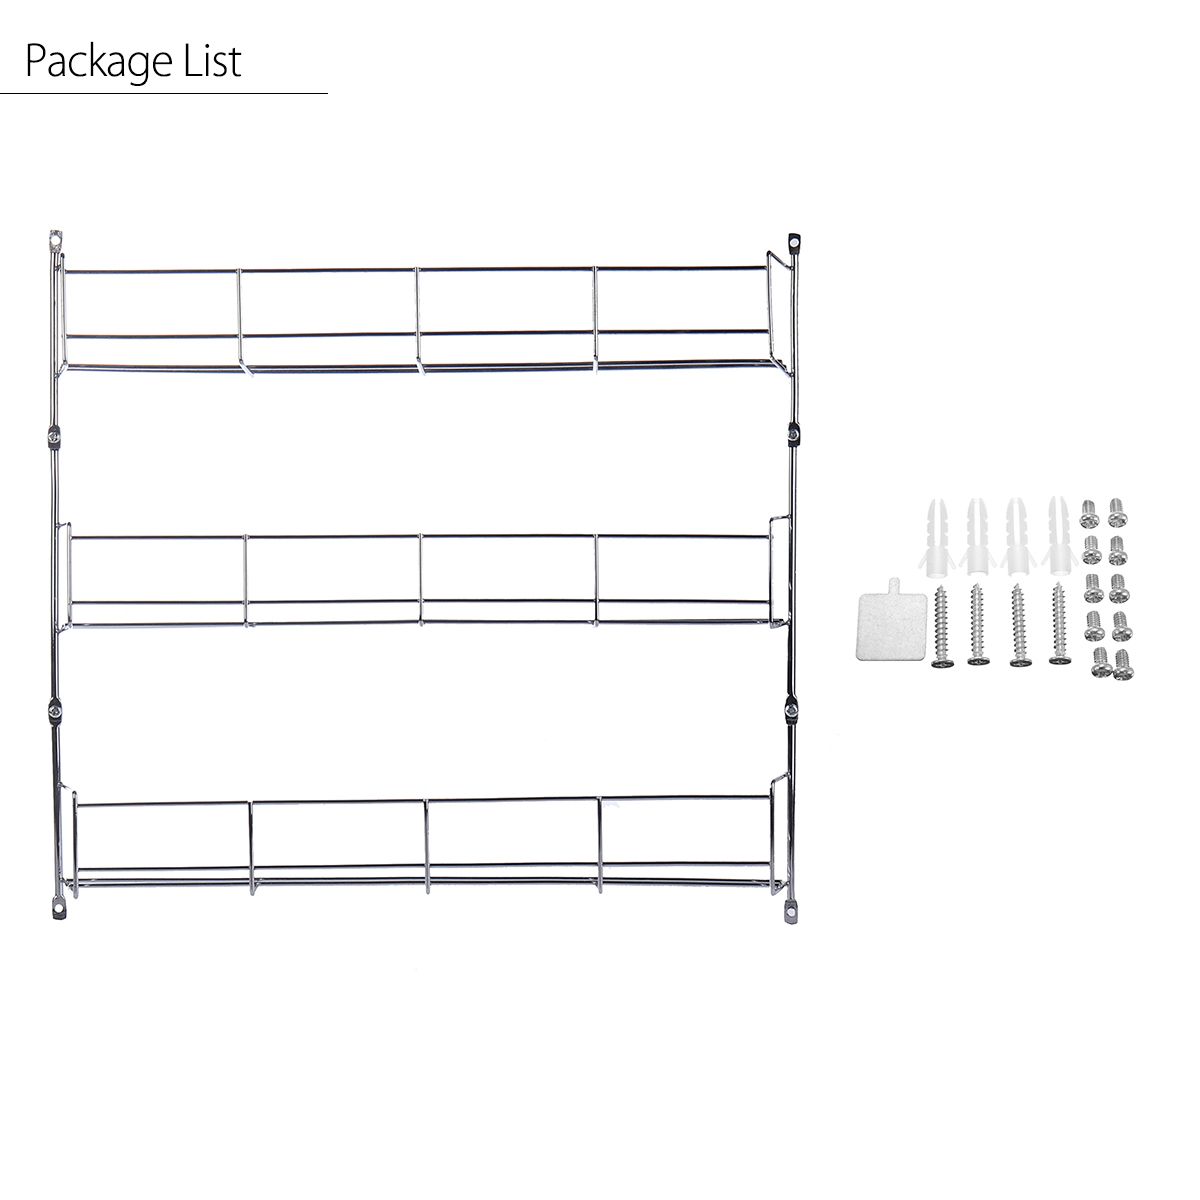 3-Tiers-Kitchen-Spice-Rack-Cabinet-Wall-Mount-Storage-Shelf-Pantry-Holder-Kitchen-Storage-Rack-1306606